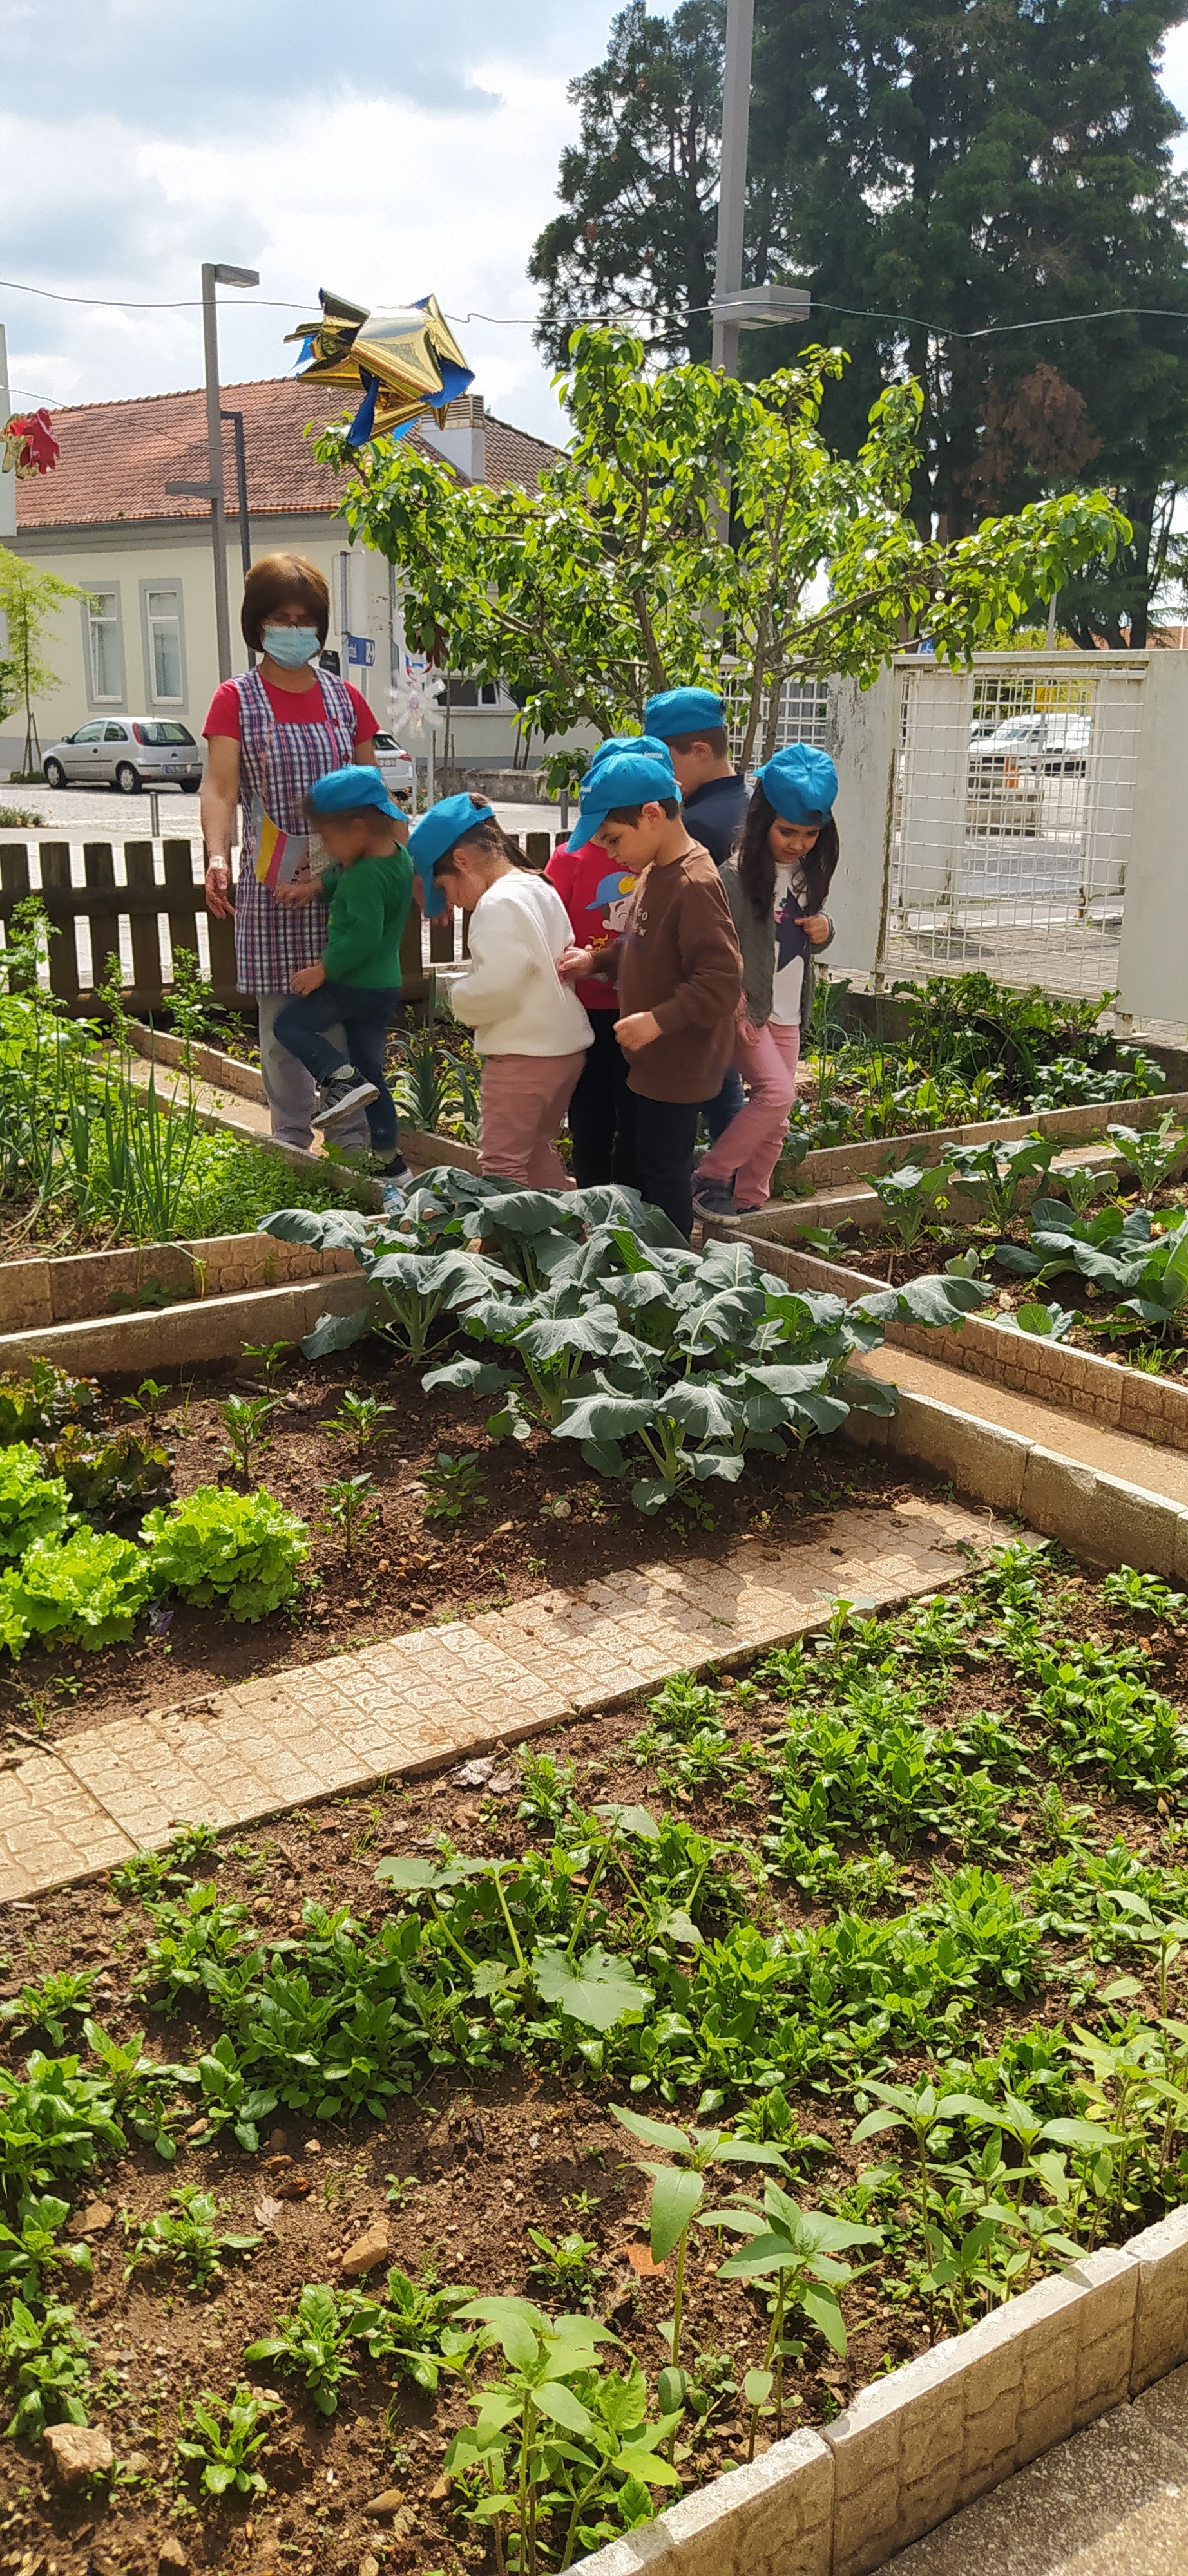 As crianças observaram a horta e colaboraram no retirar das plantas invasoras. Conheceram as partes que compõem a planta, revelando interesse em conhecer/identificar  todas as plantas, que cresciam.